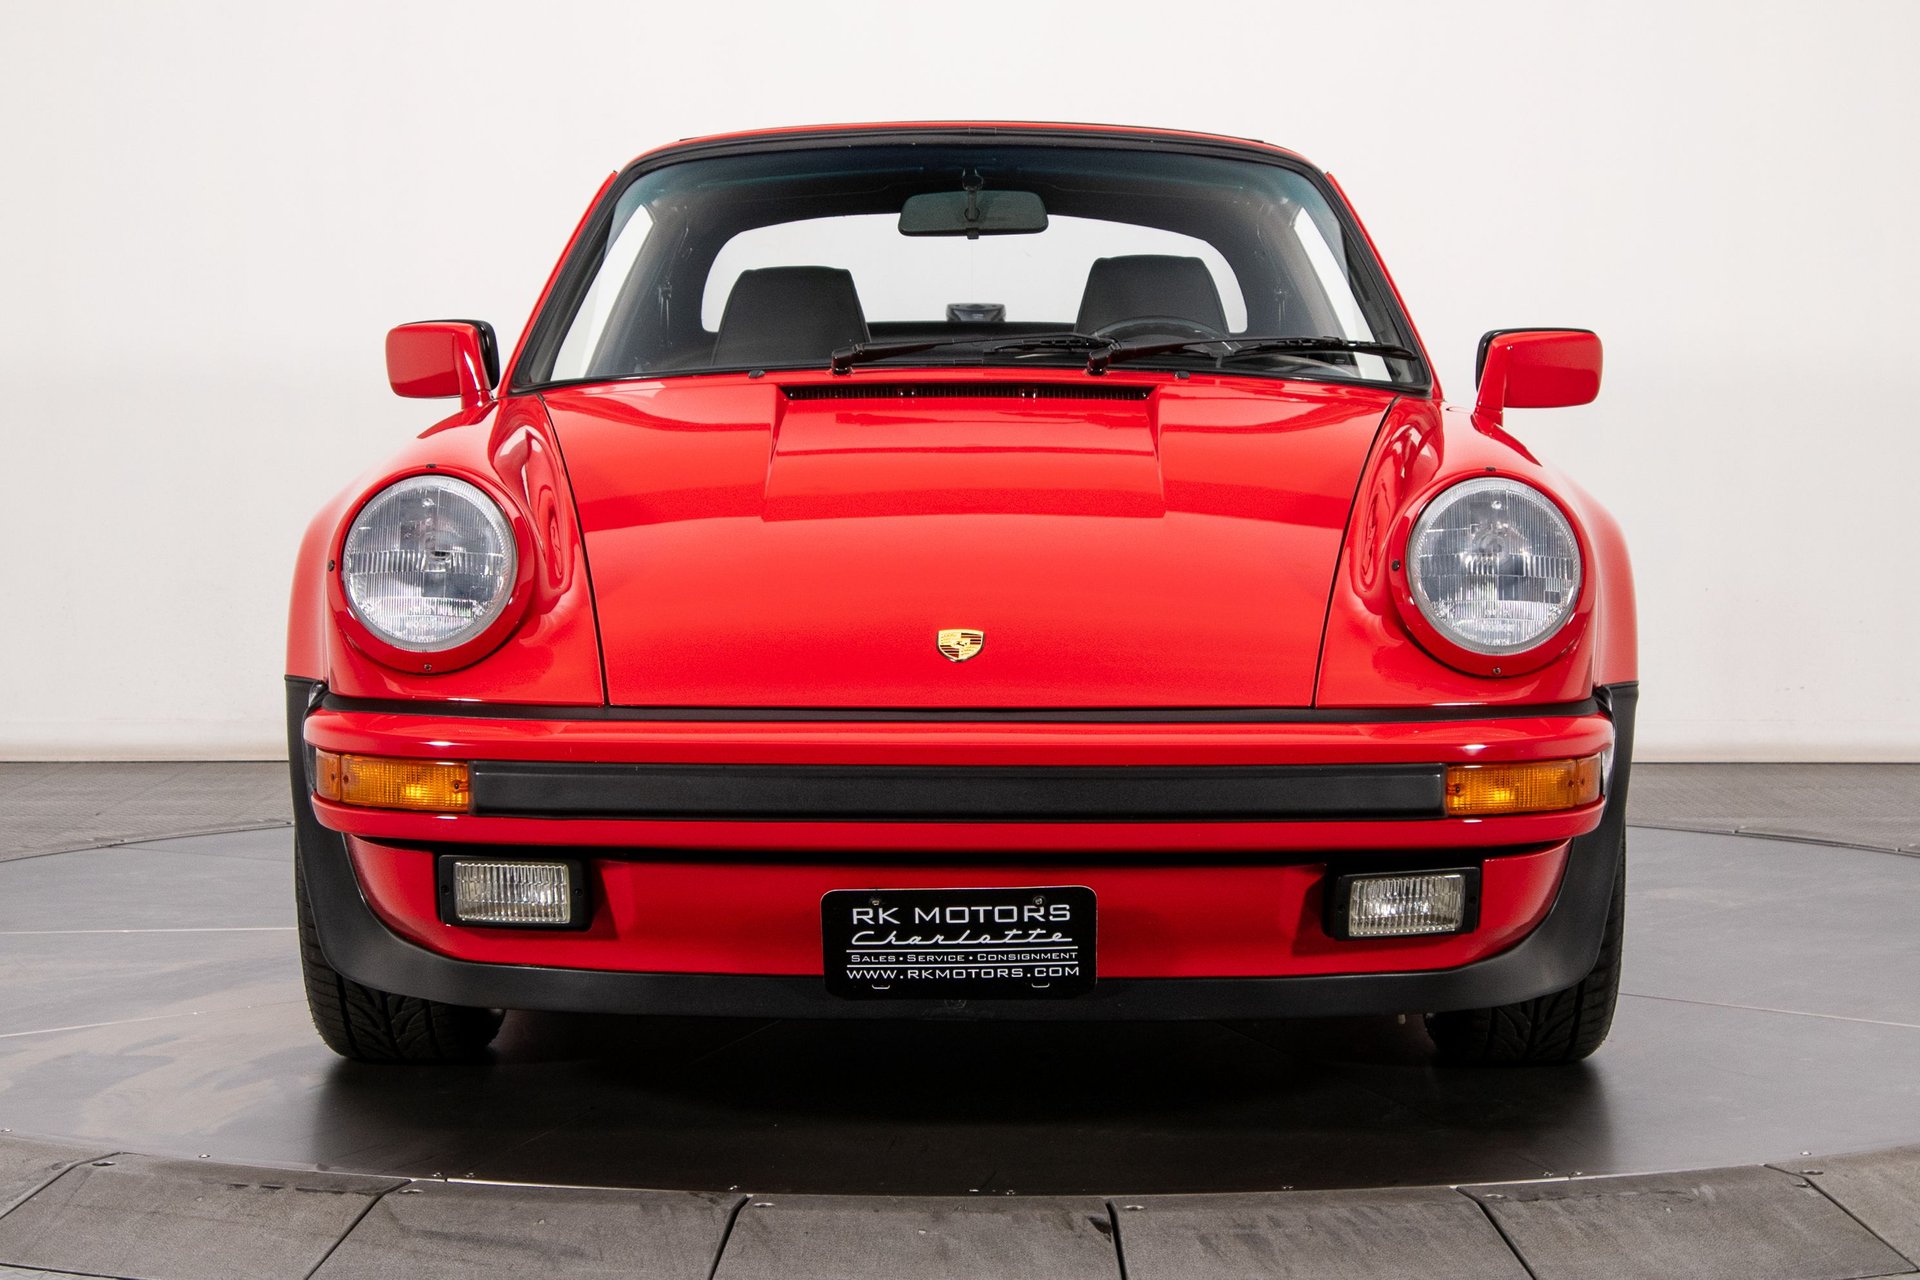 For Sale 1988 Porsche 911